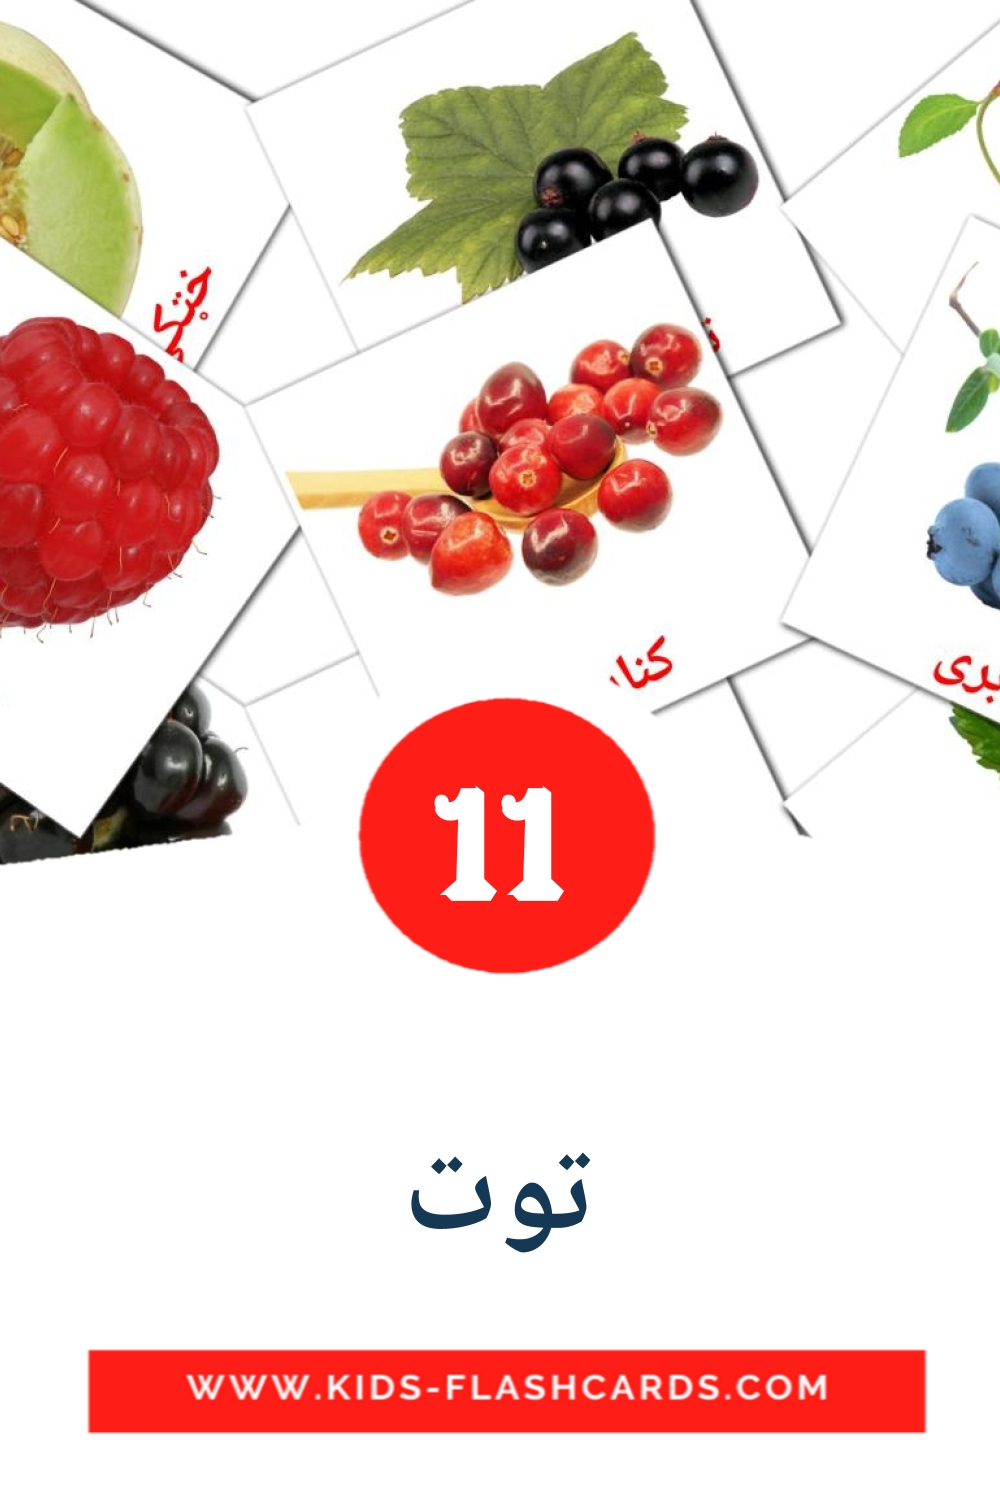 11 tarjetas didacticas de توت para el jardín de infancia en pashto